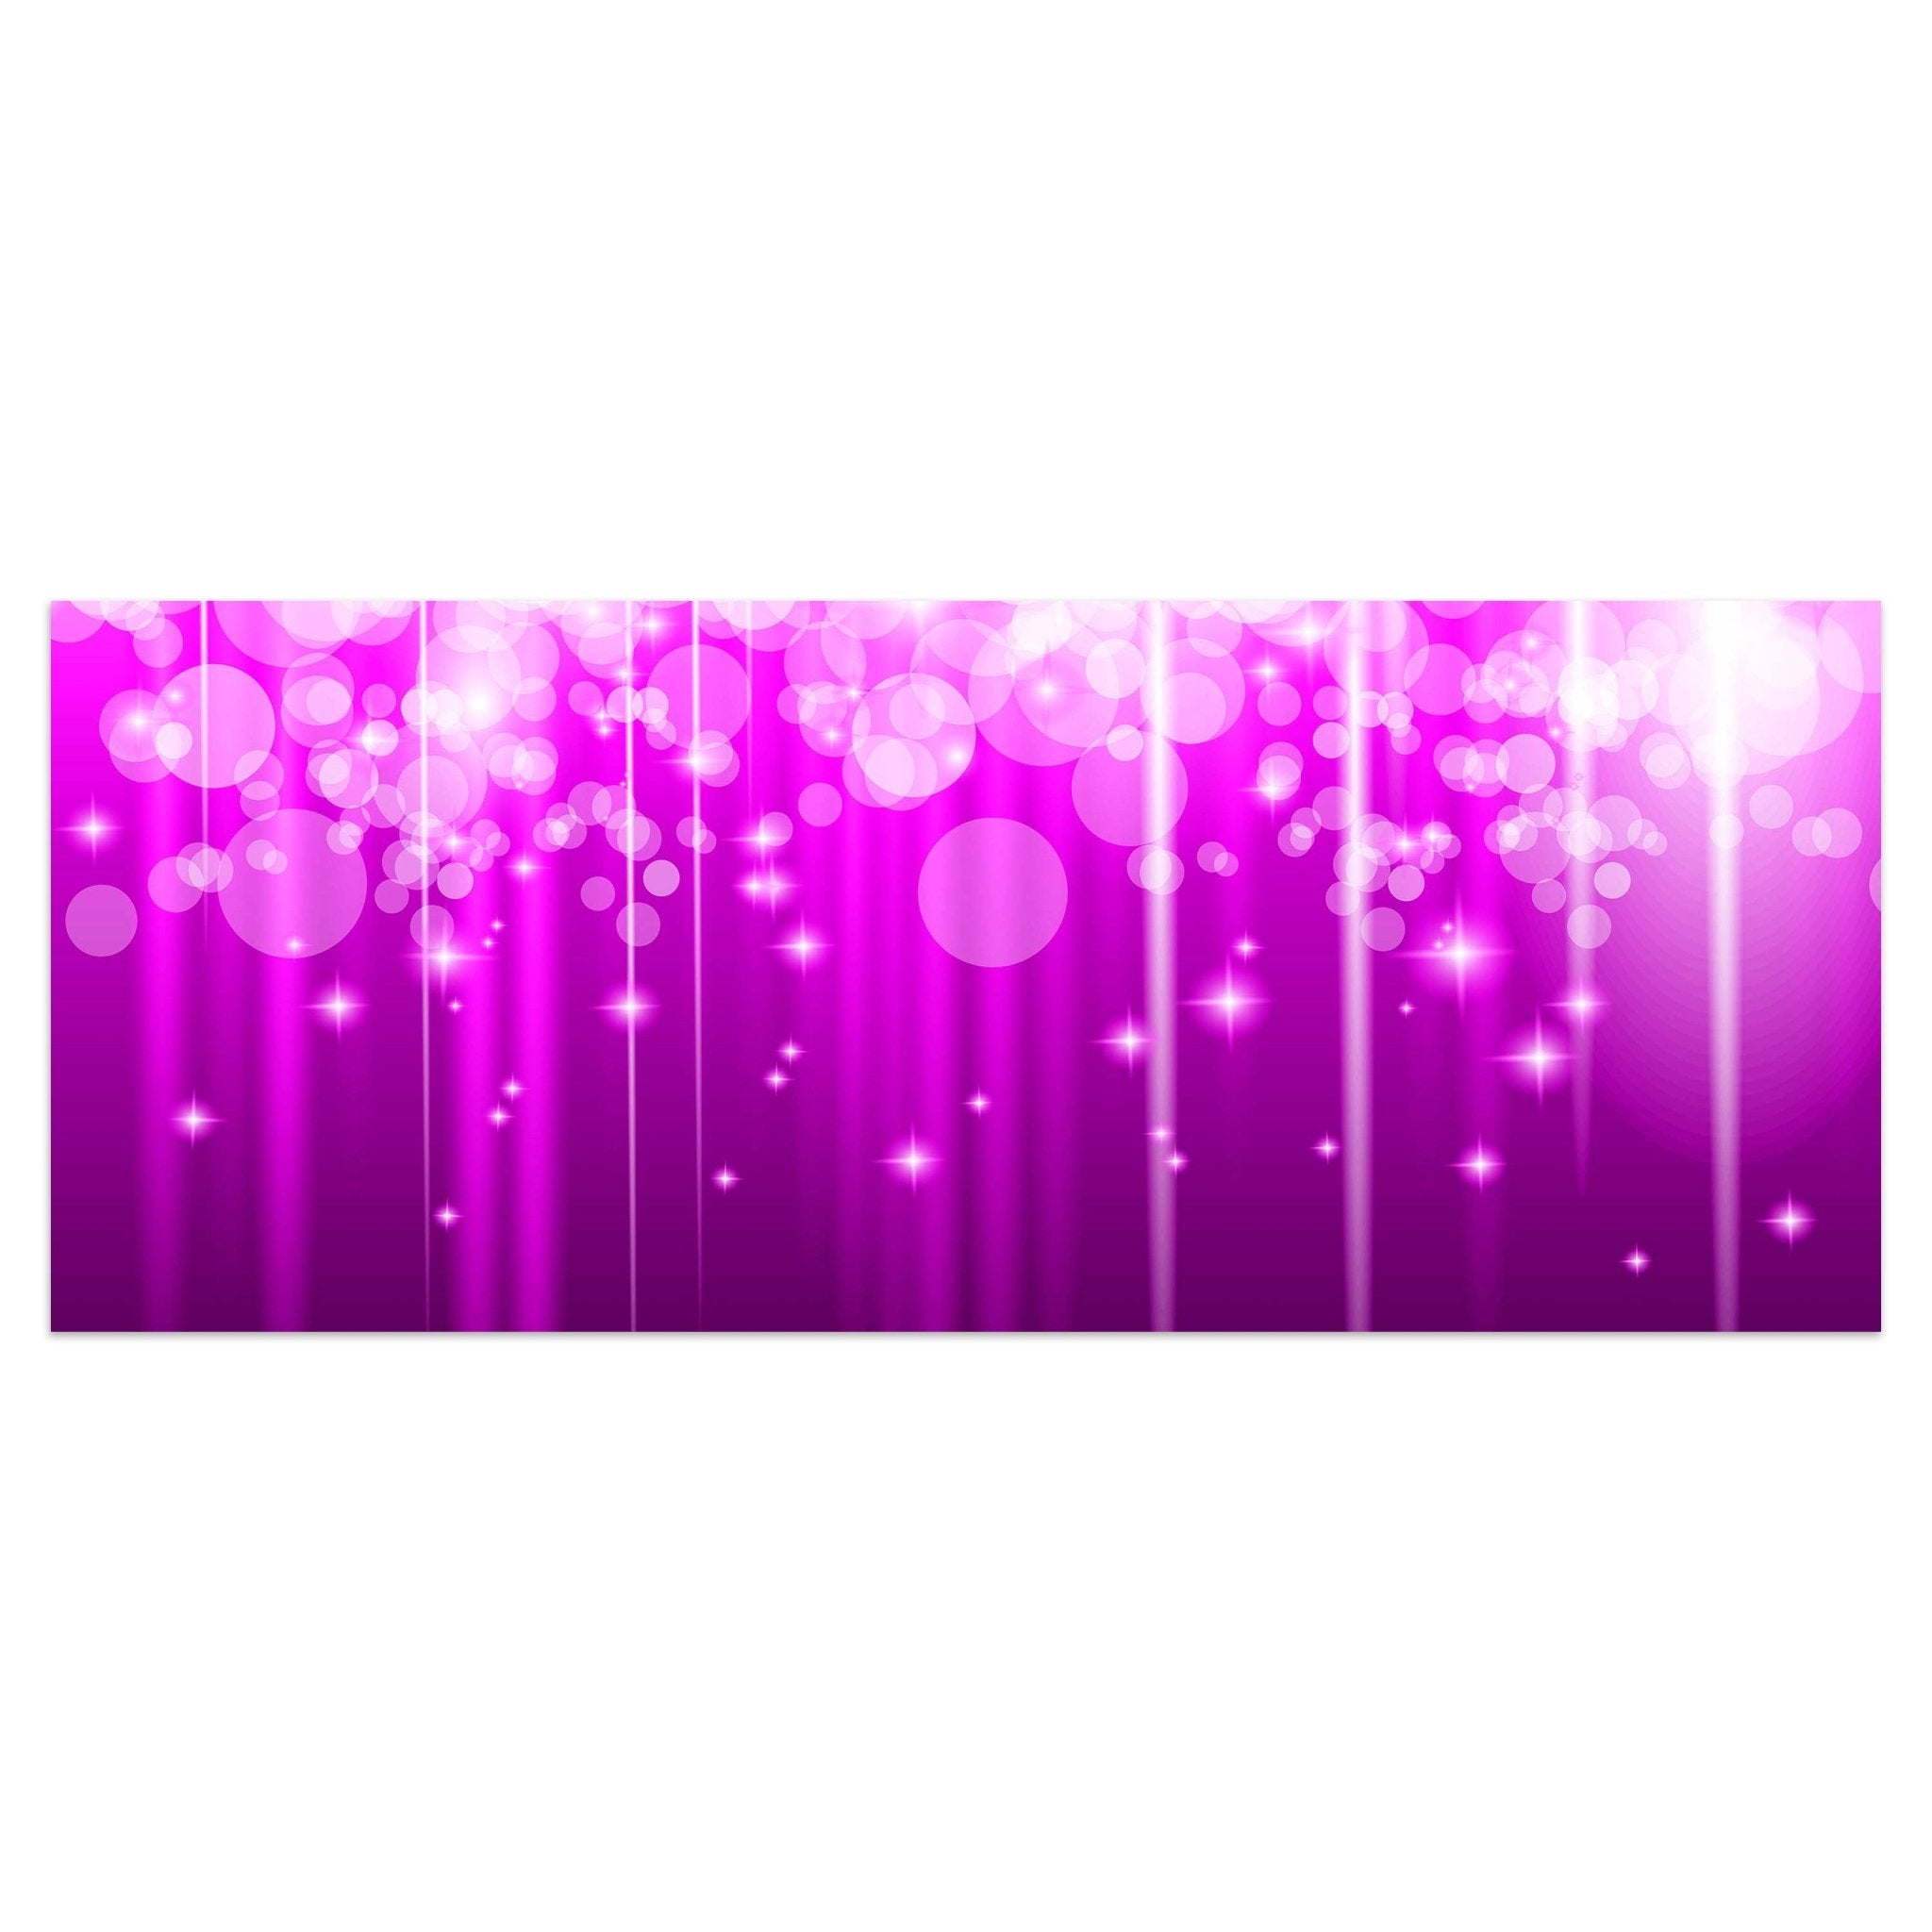 Leinwandbild Pinker Lichterregen M0424 kaufen - Bild 1